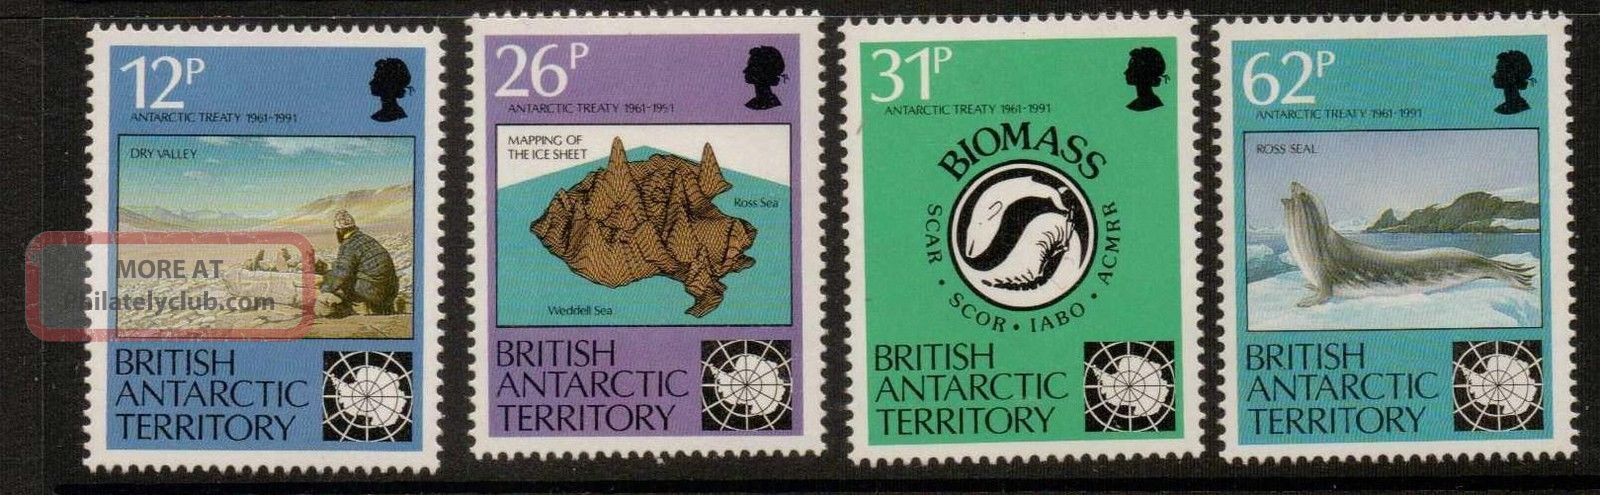 British Antarctic Terr.  Sg196/9 1991 Antarctic Treaty British Colonies & Territories photo